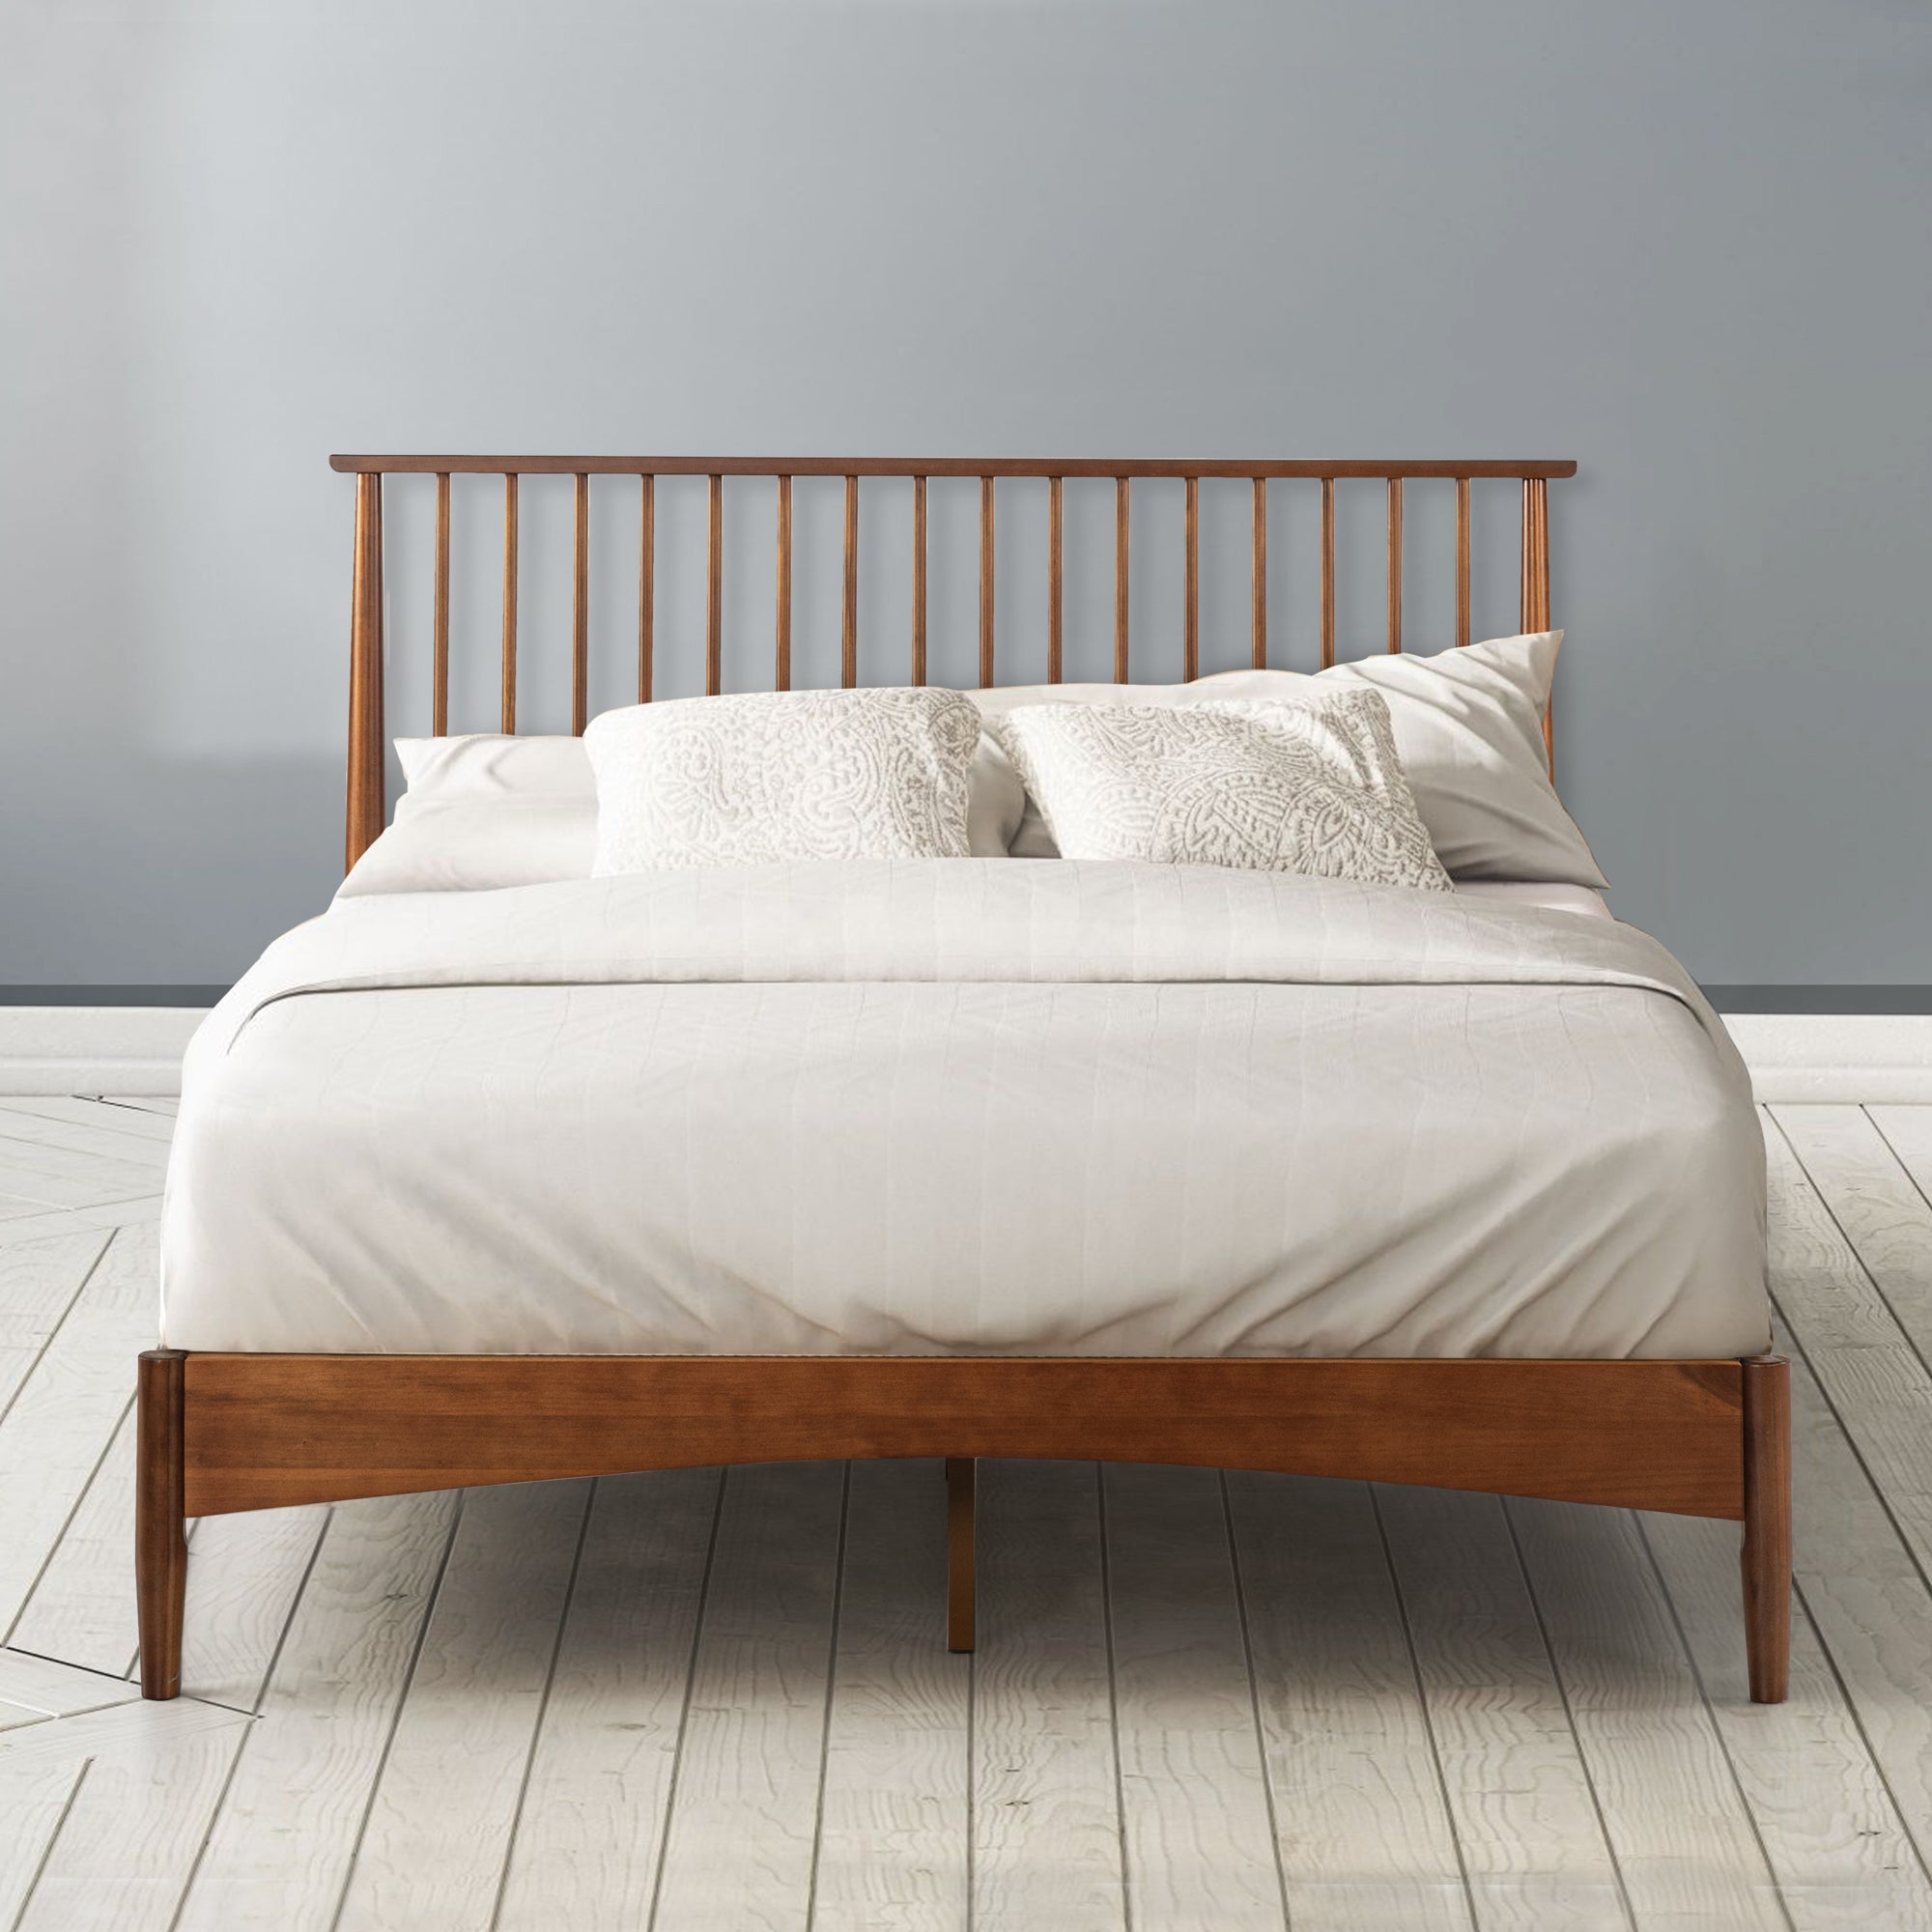 Garcia Wood Bed Frame